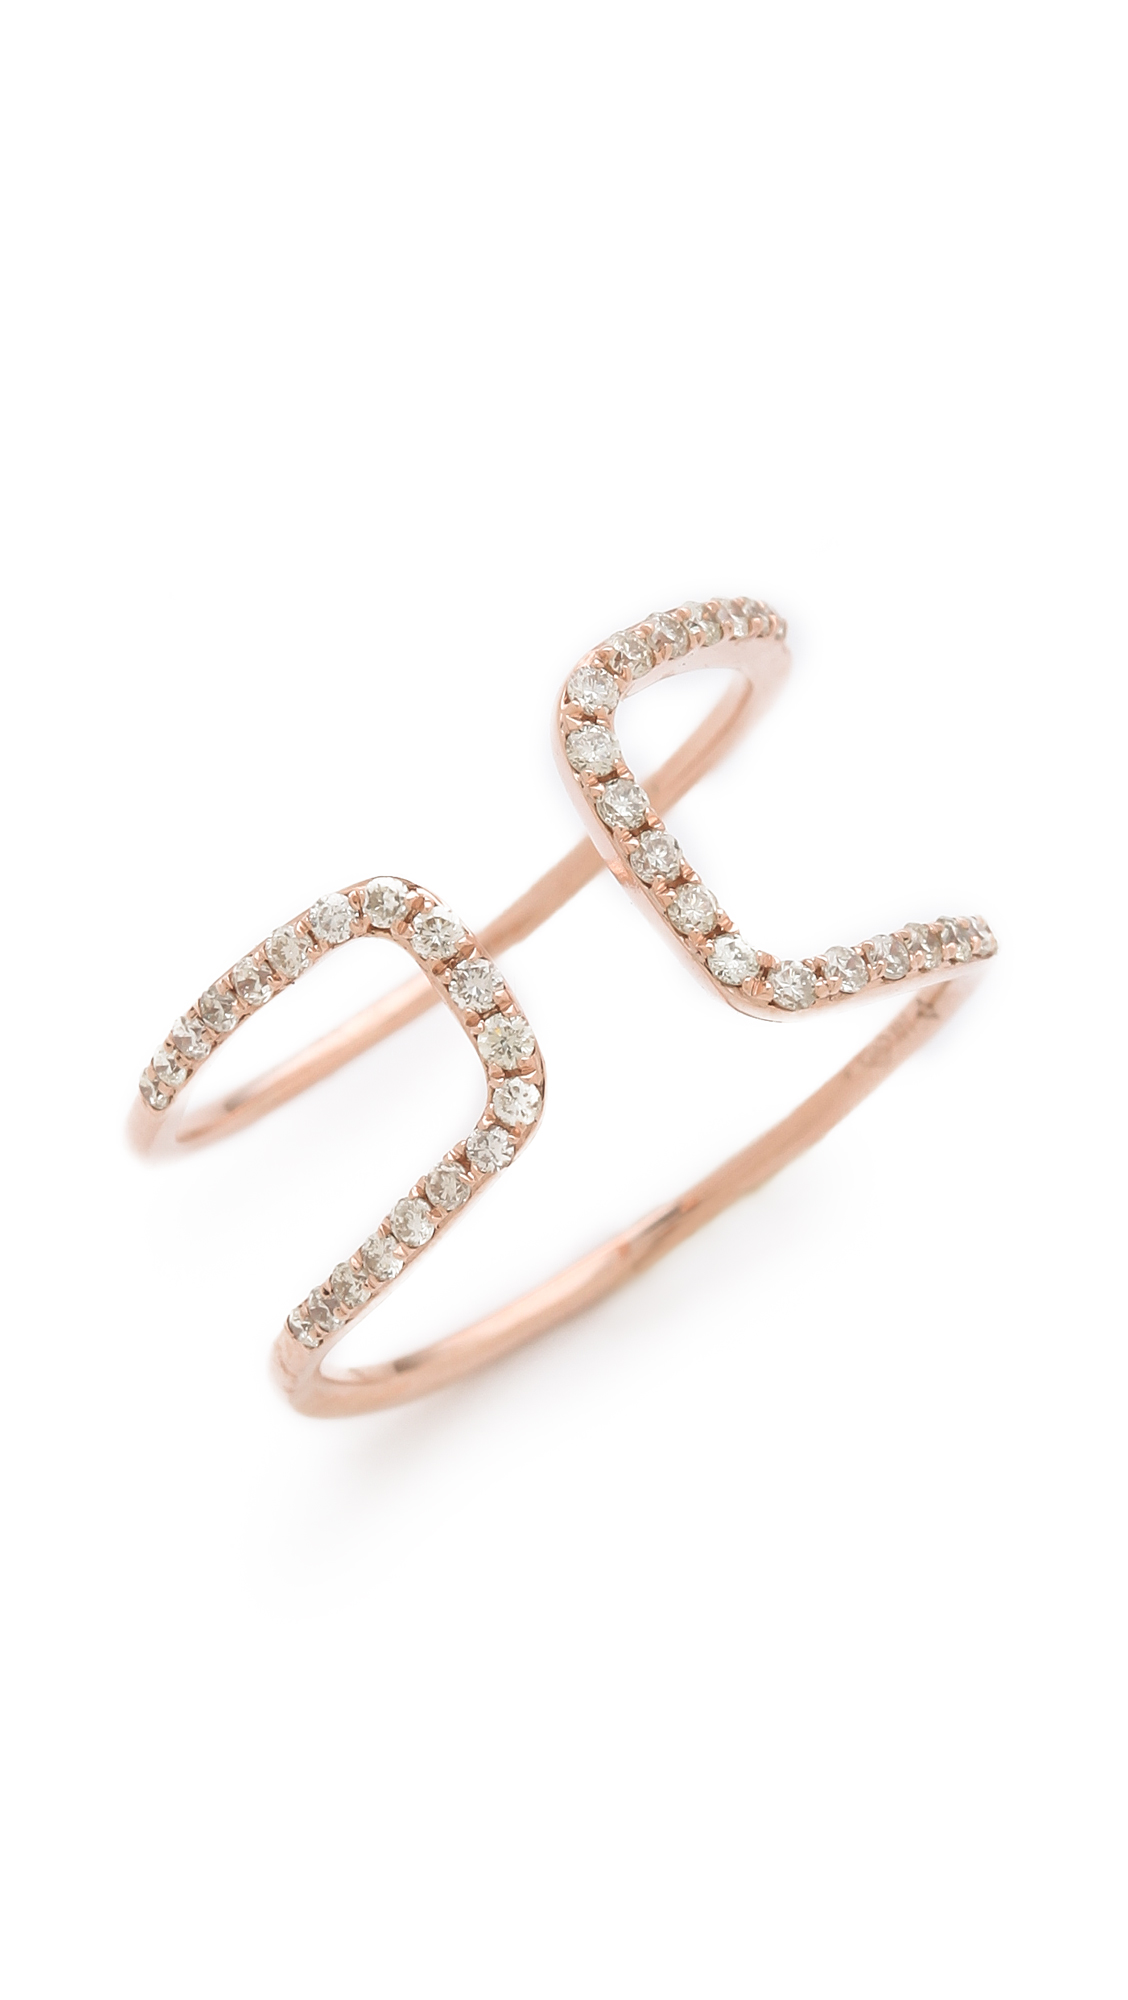 Lyst - Gabriela artigas White Diamond Cutout Ring in Pink